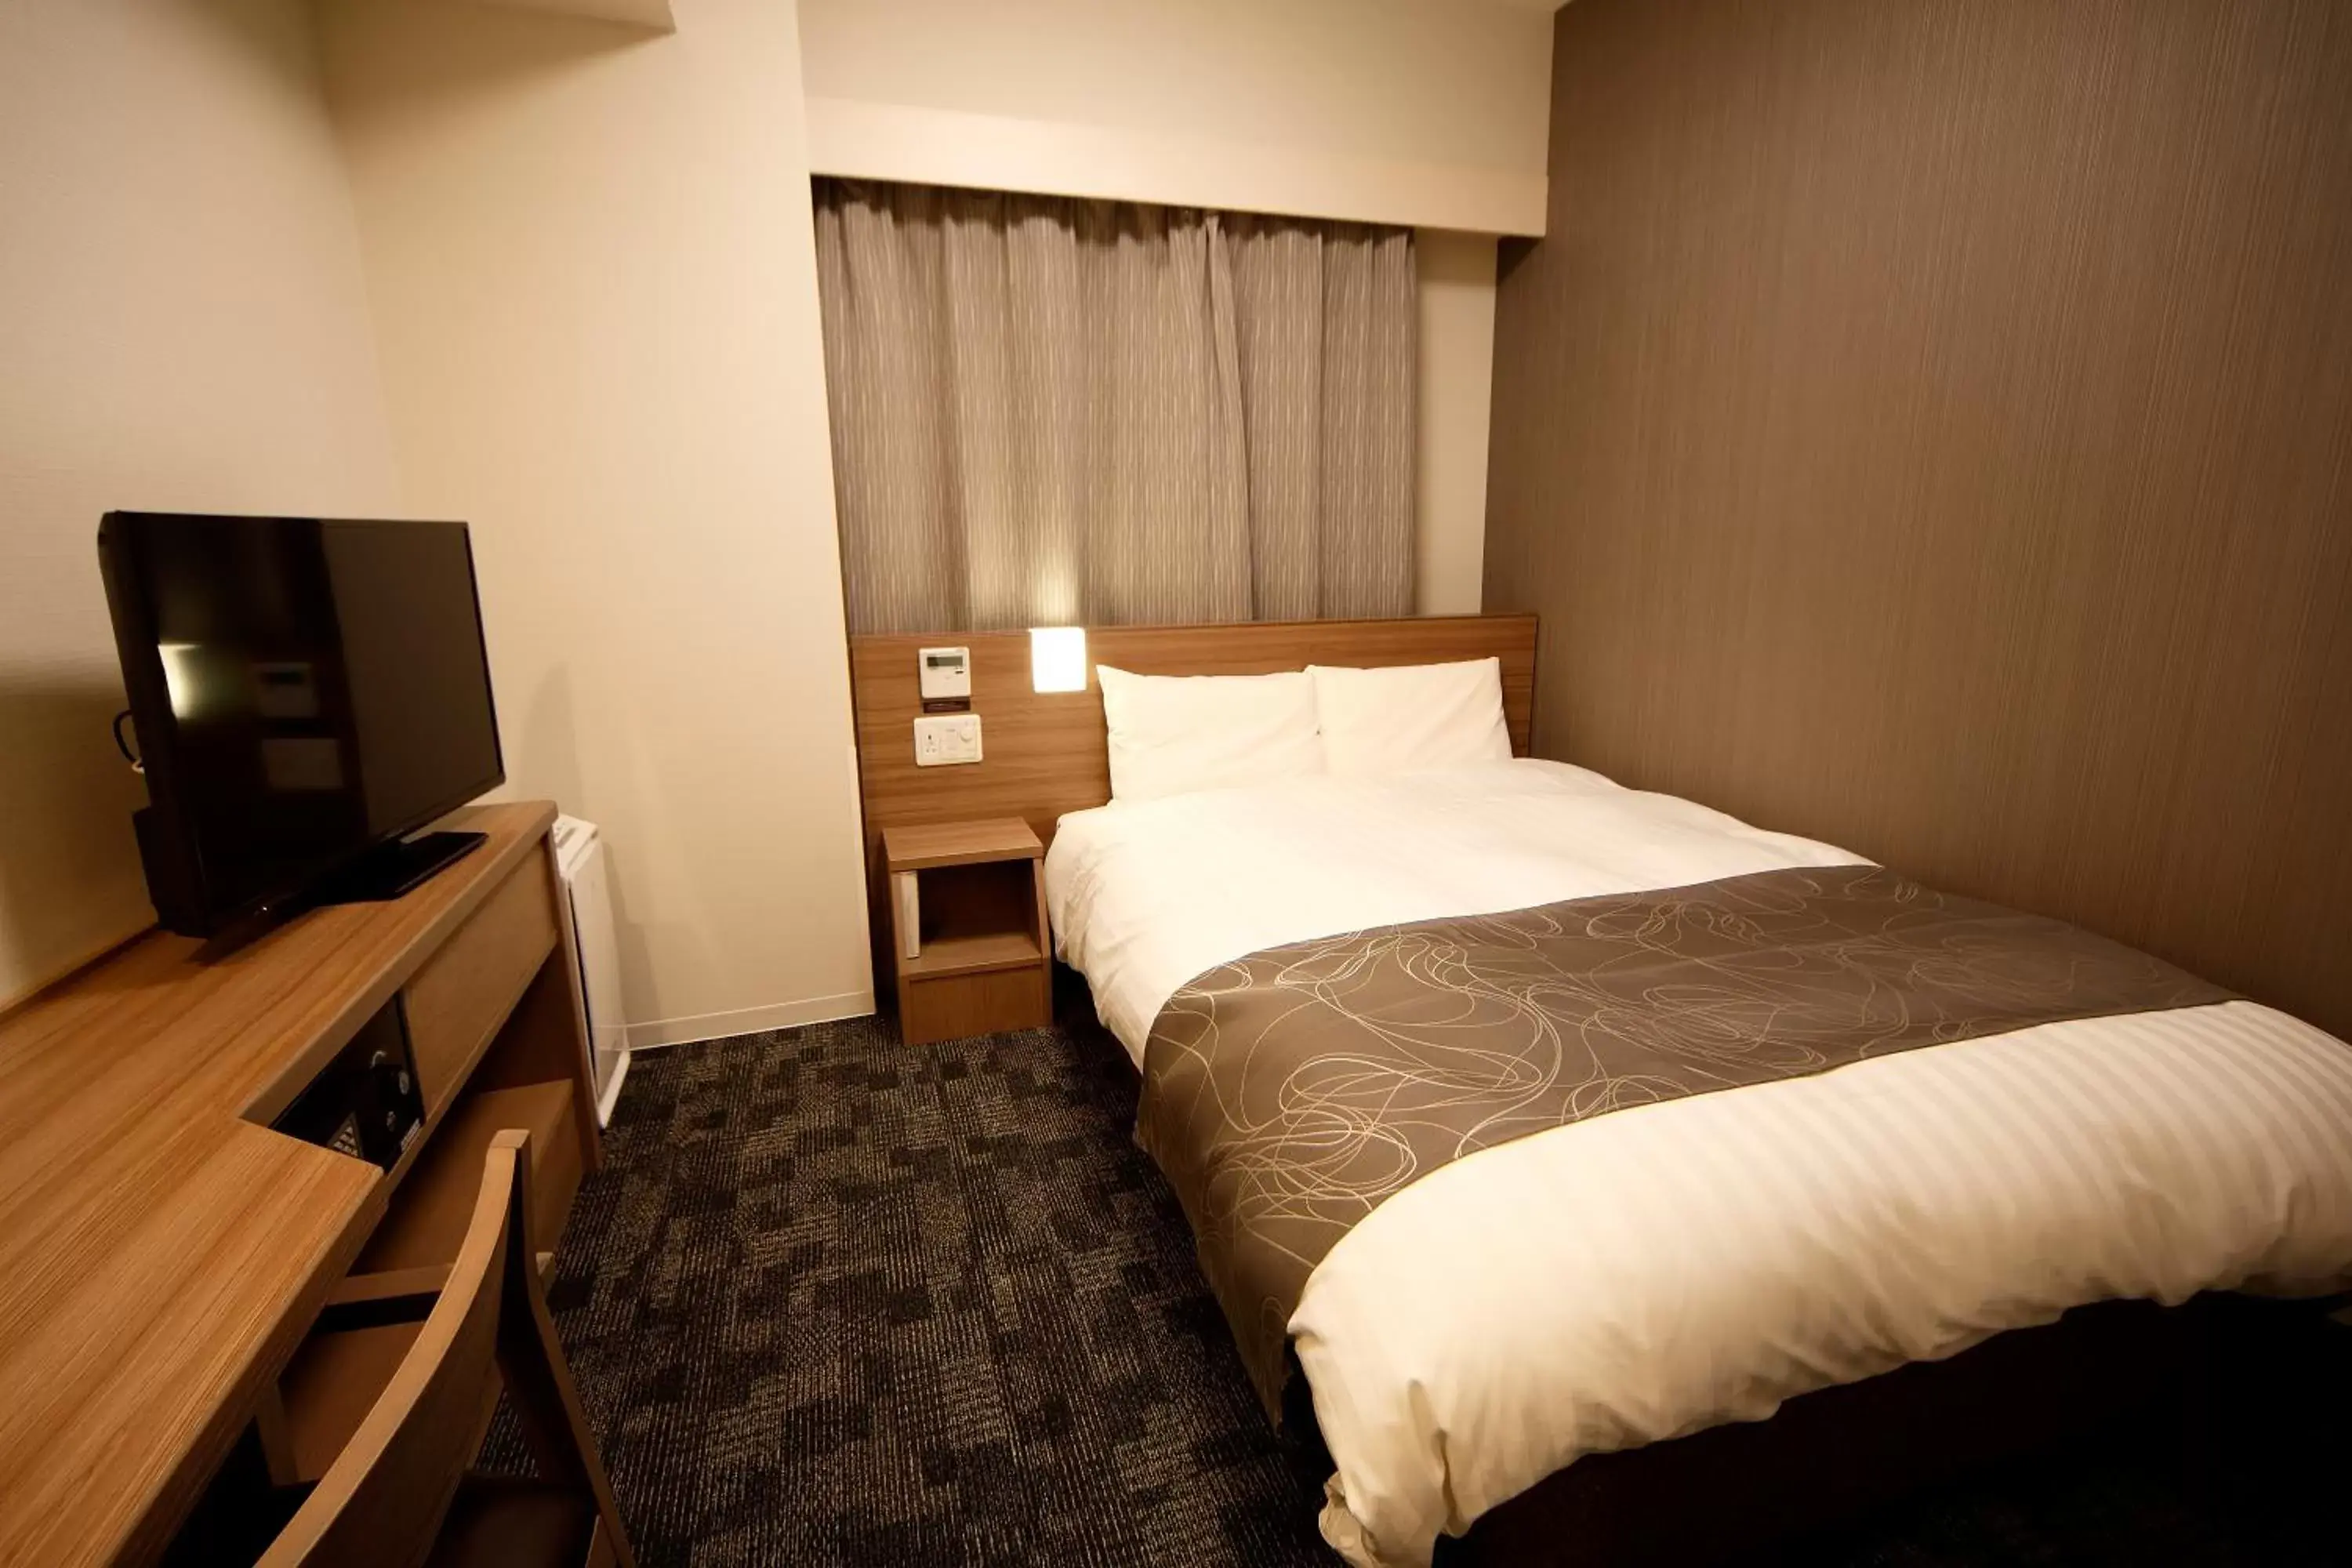 Bed, Room Photo in Dormy Inn Nagano